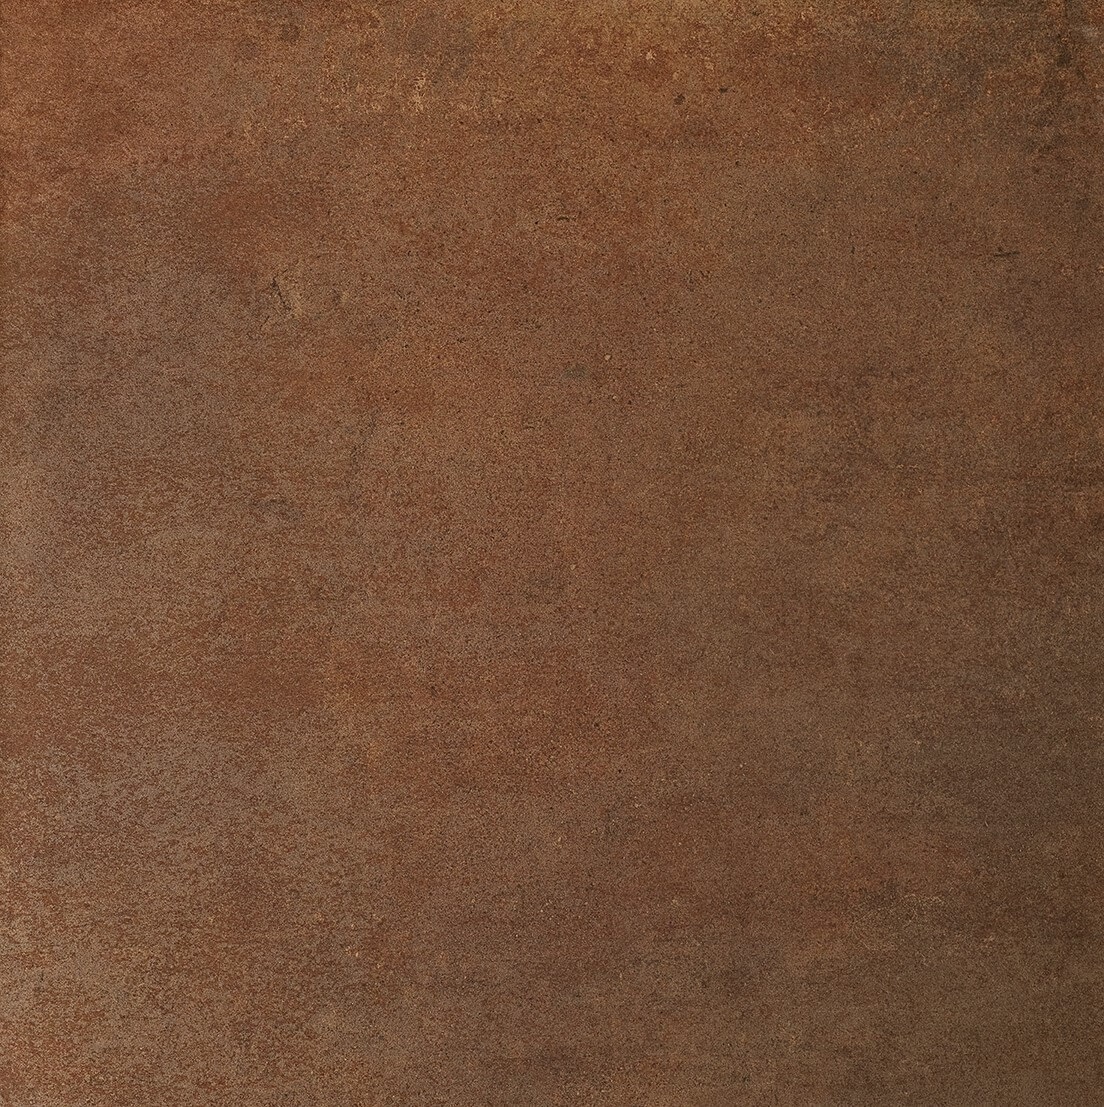 Rust brown цвет фото 117